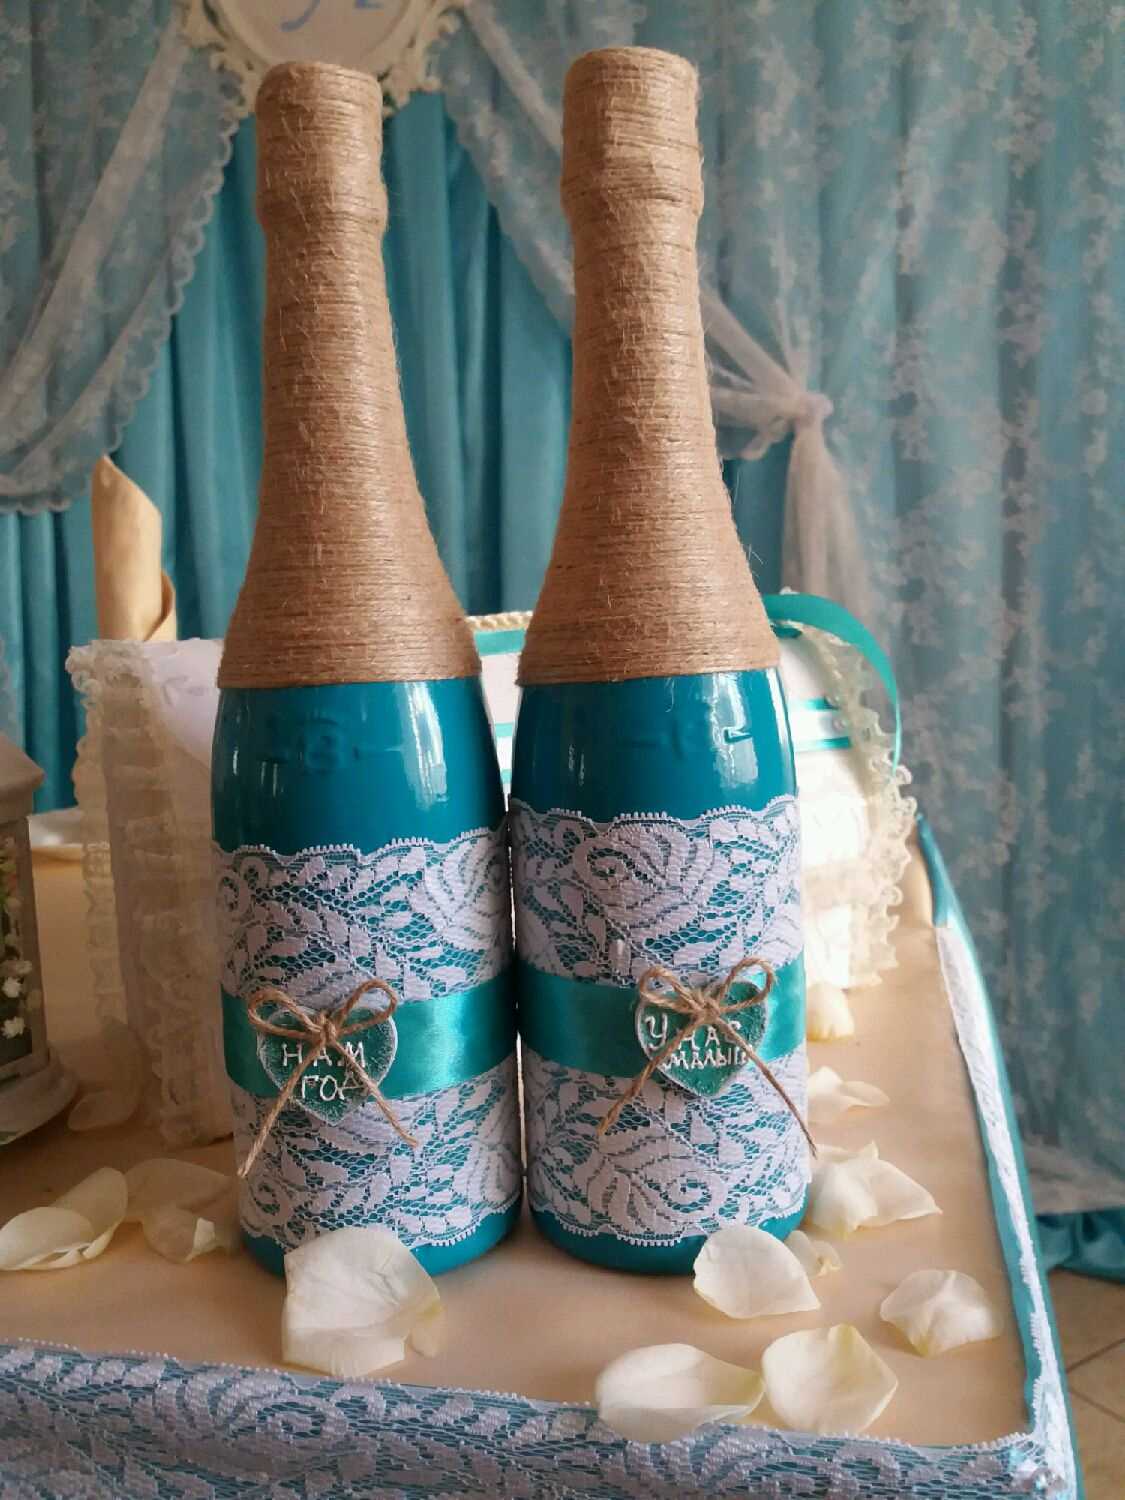 ideea unui design frumos de sticle de șampanie cu sfoară